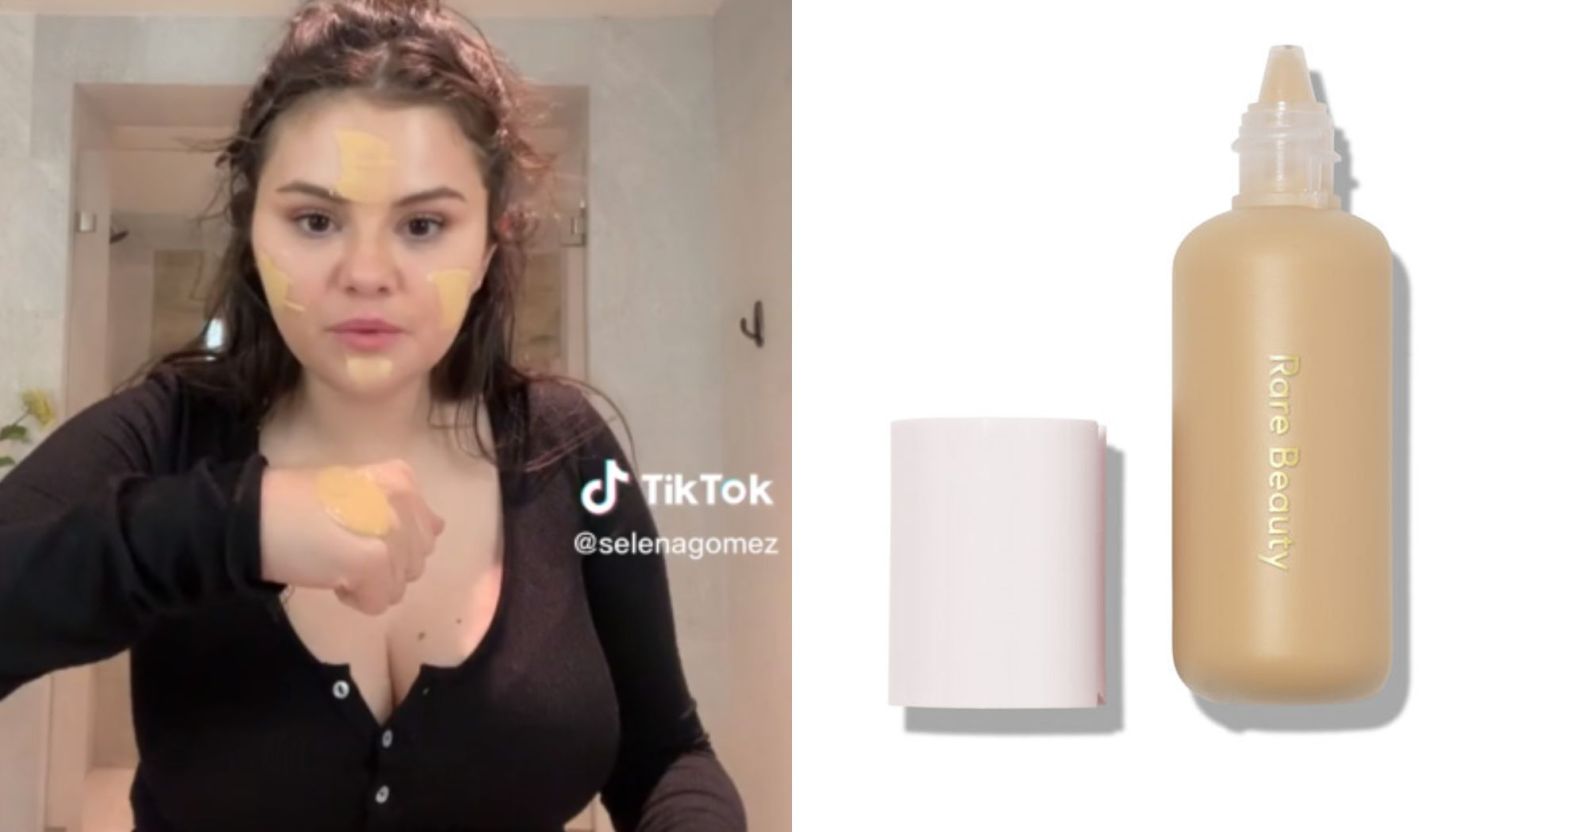 Selena Gomez attemtps a unique TikTok trend with impressive results.